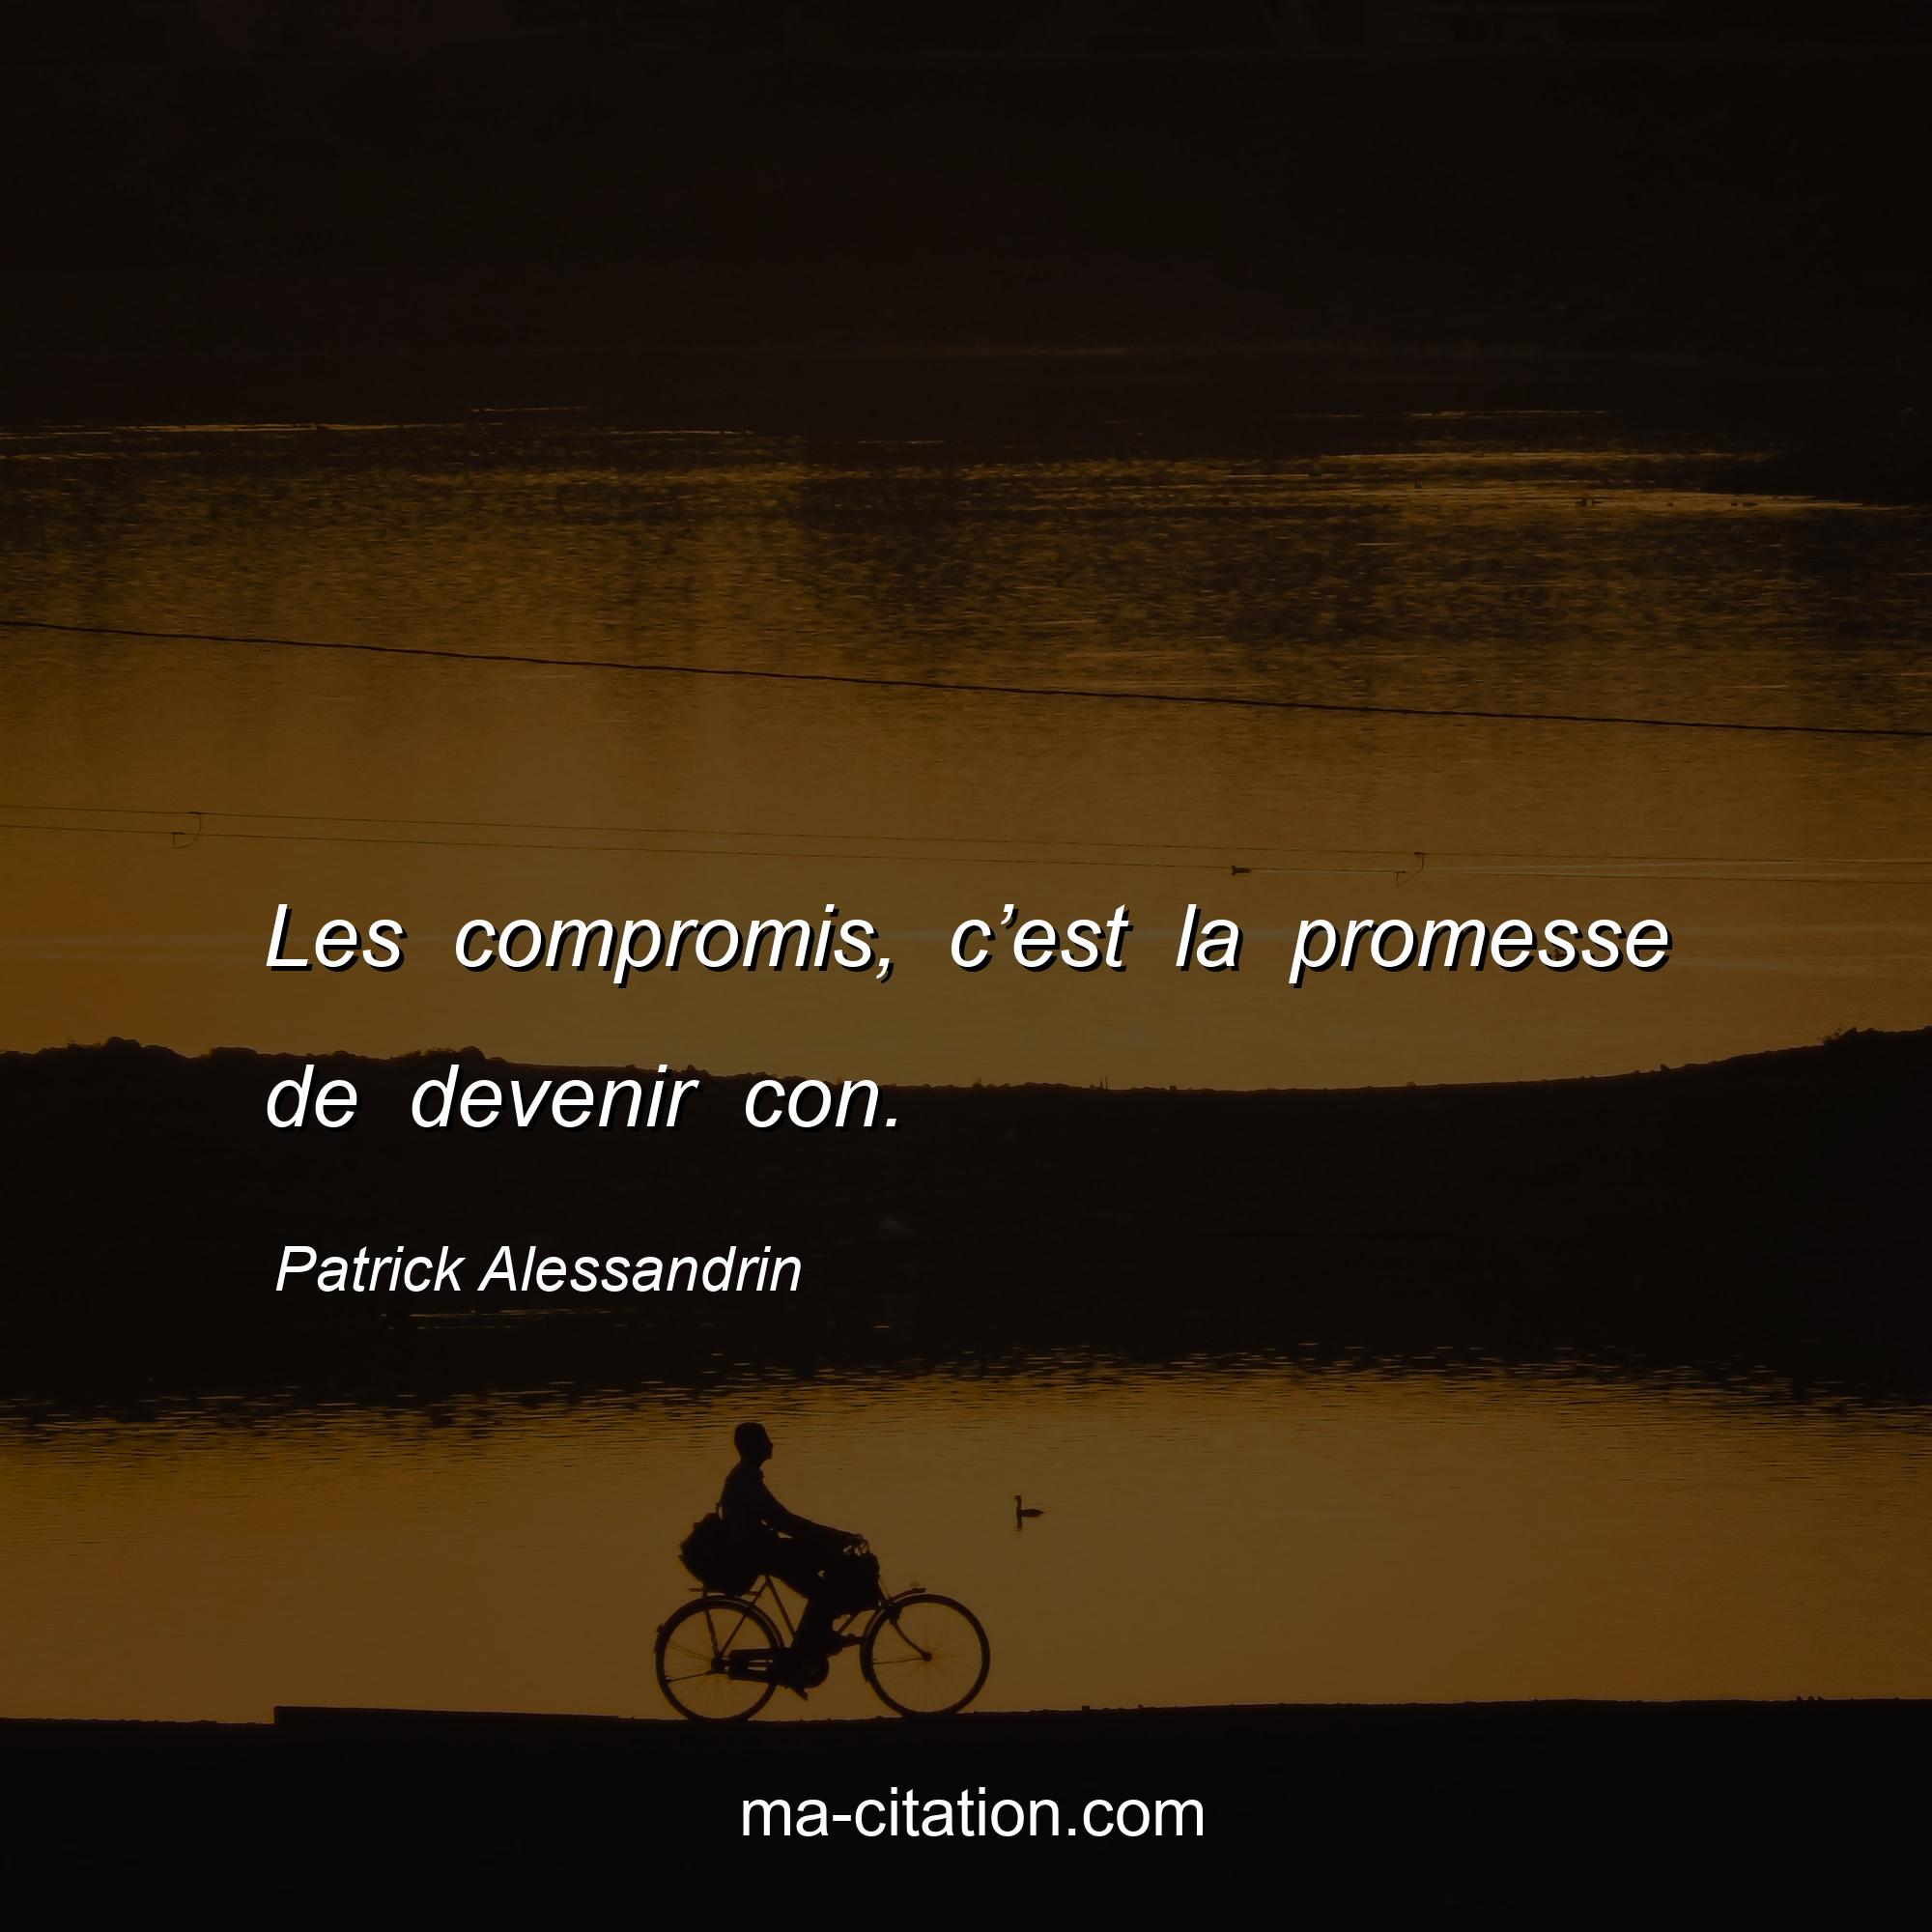 Patrick Alessandrin : Les compromis, c’est la promesse de devenir con.